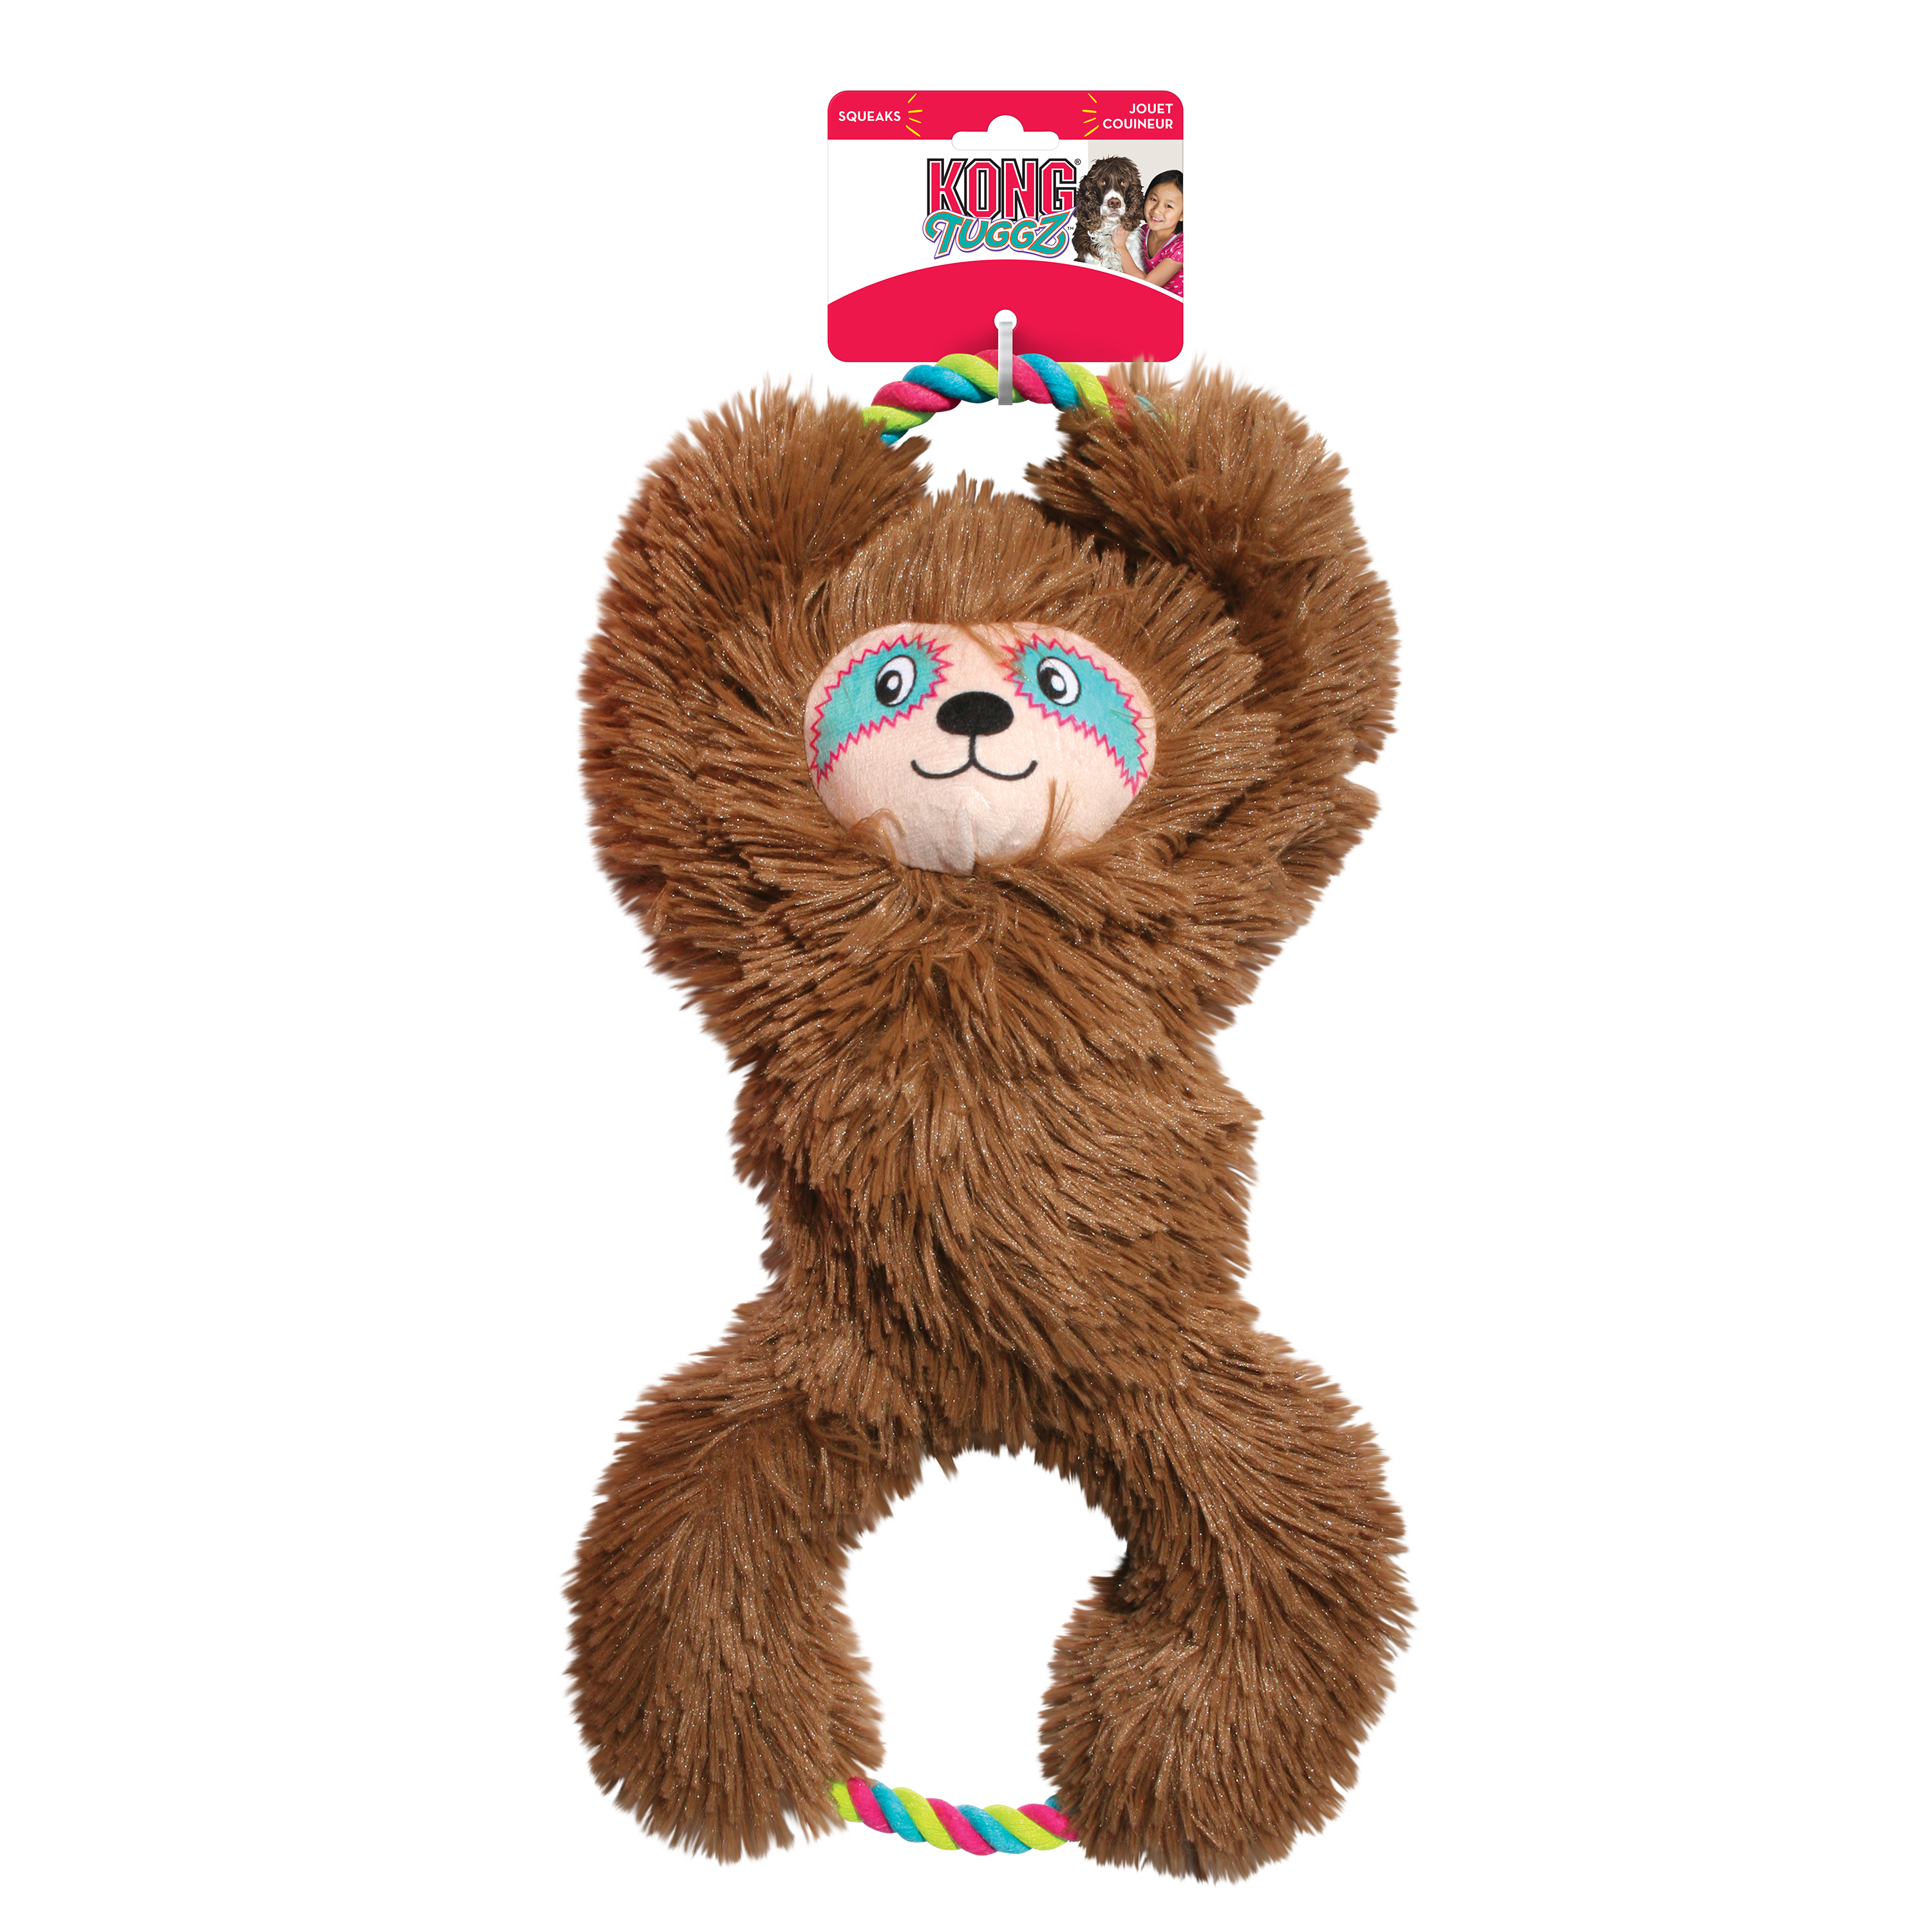 Tuggz Sloth onpack product image